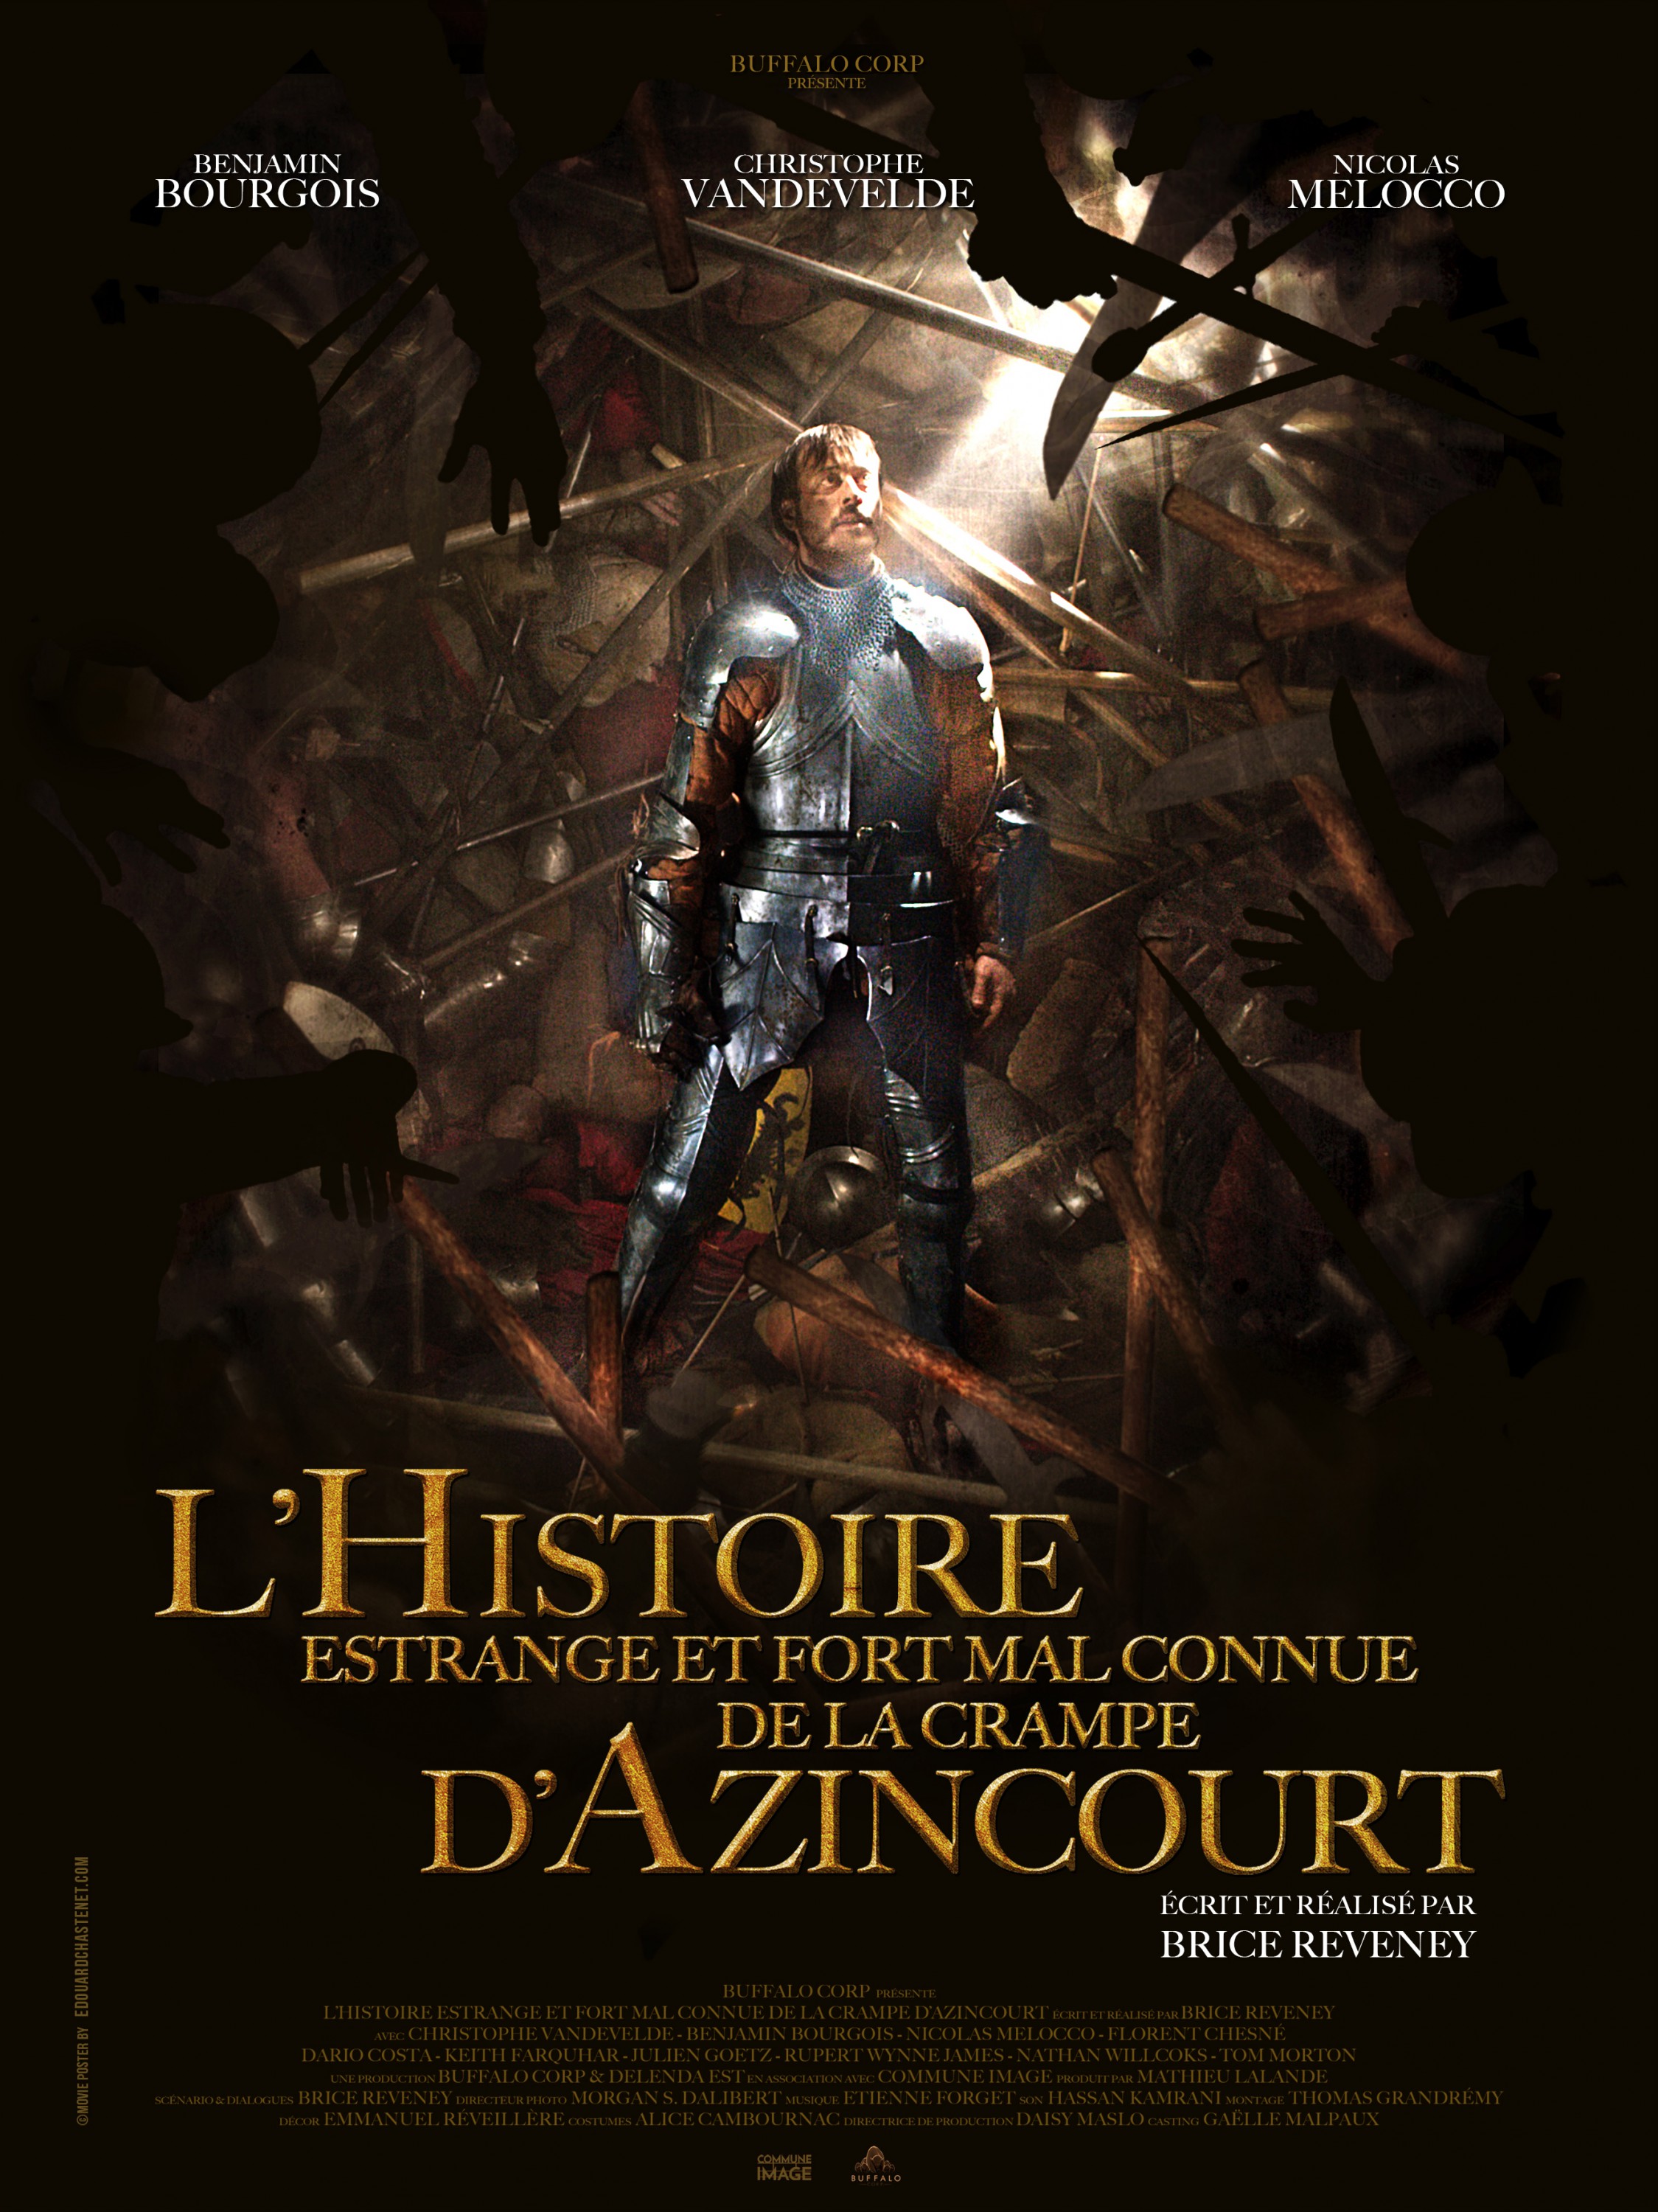 Mega Sized Movie Poster Image for L'histoire estrange et fort mal connue de la crampe d'Azincourt